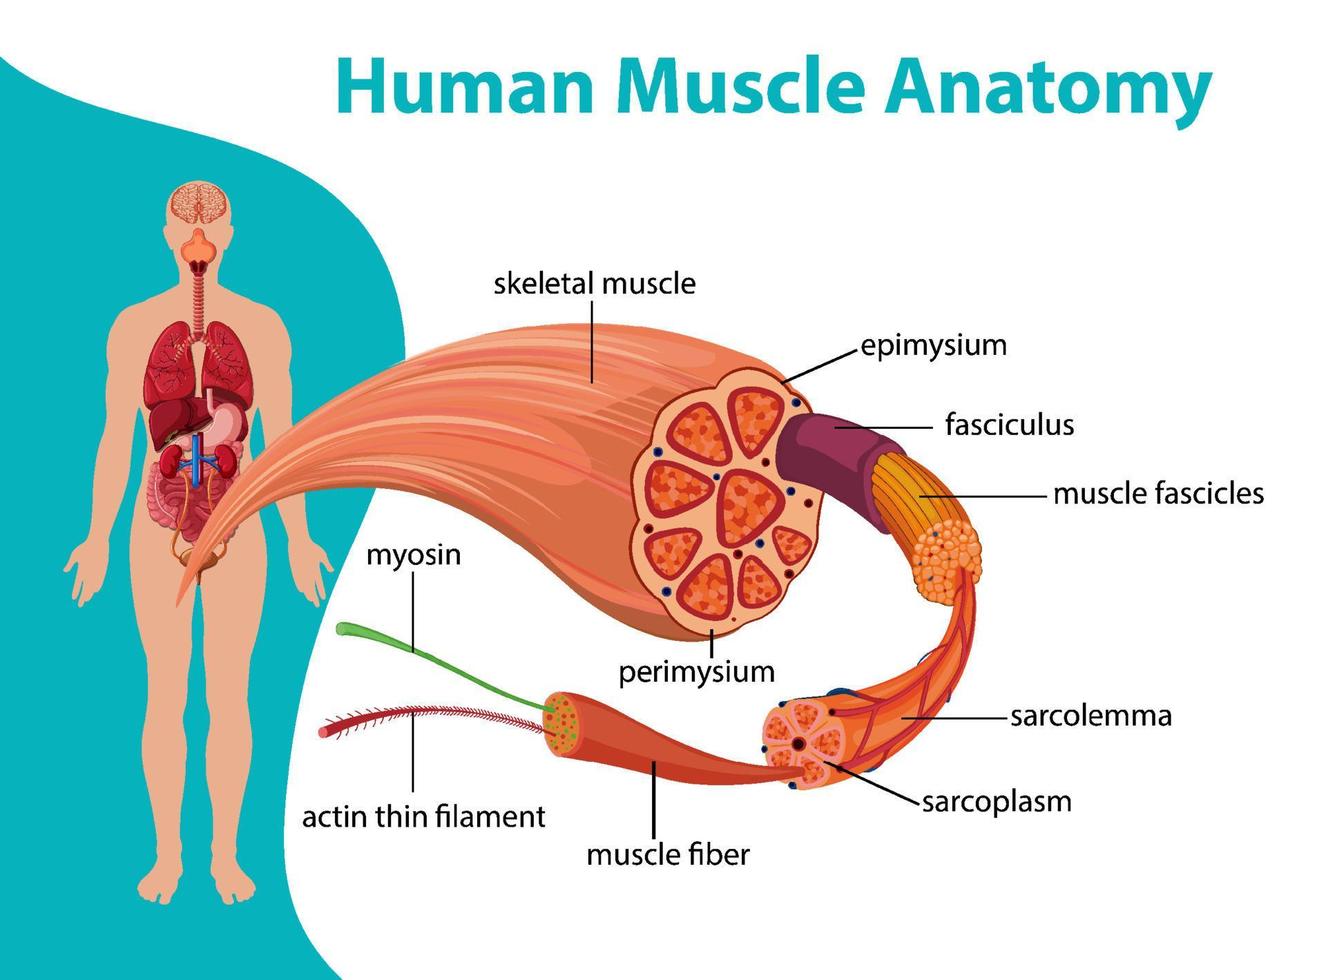 mänsklig muskelanatomi med kroppsanatomi vektor